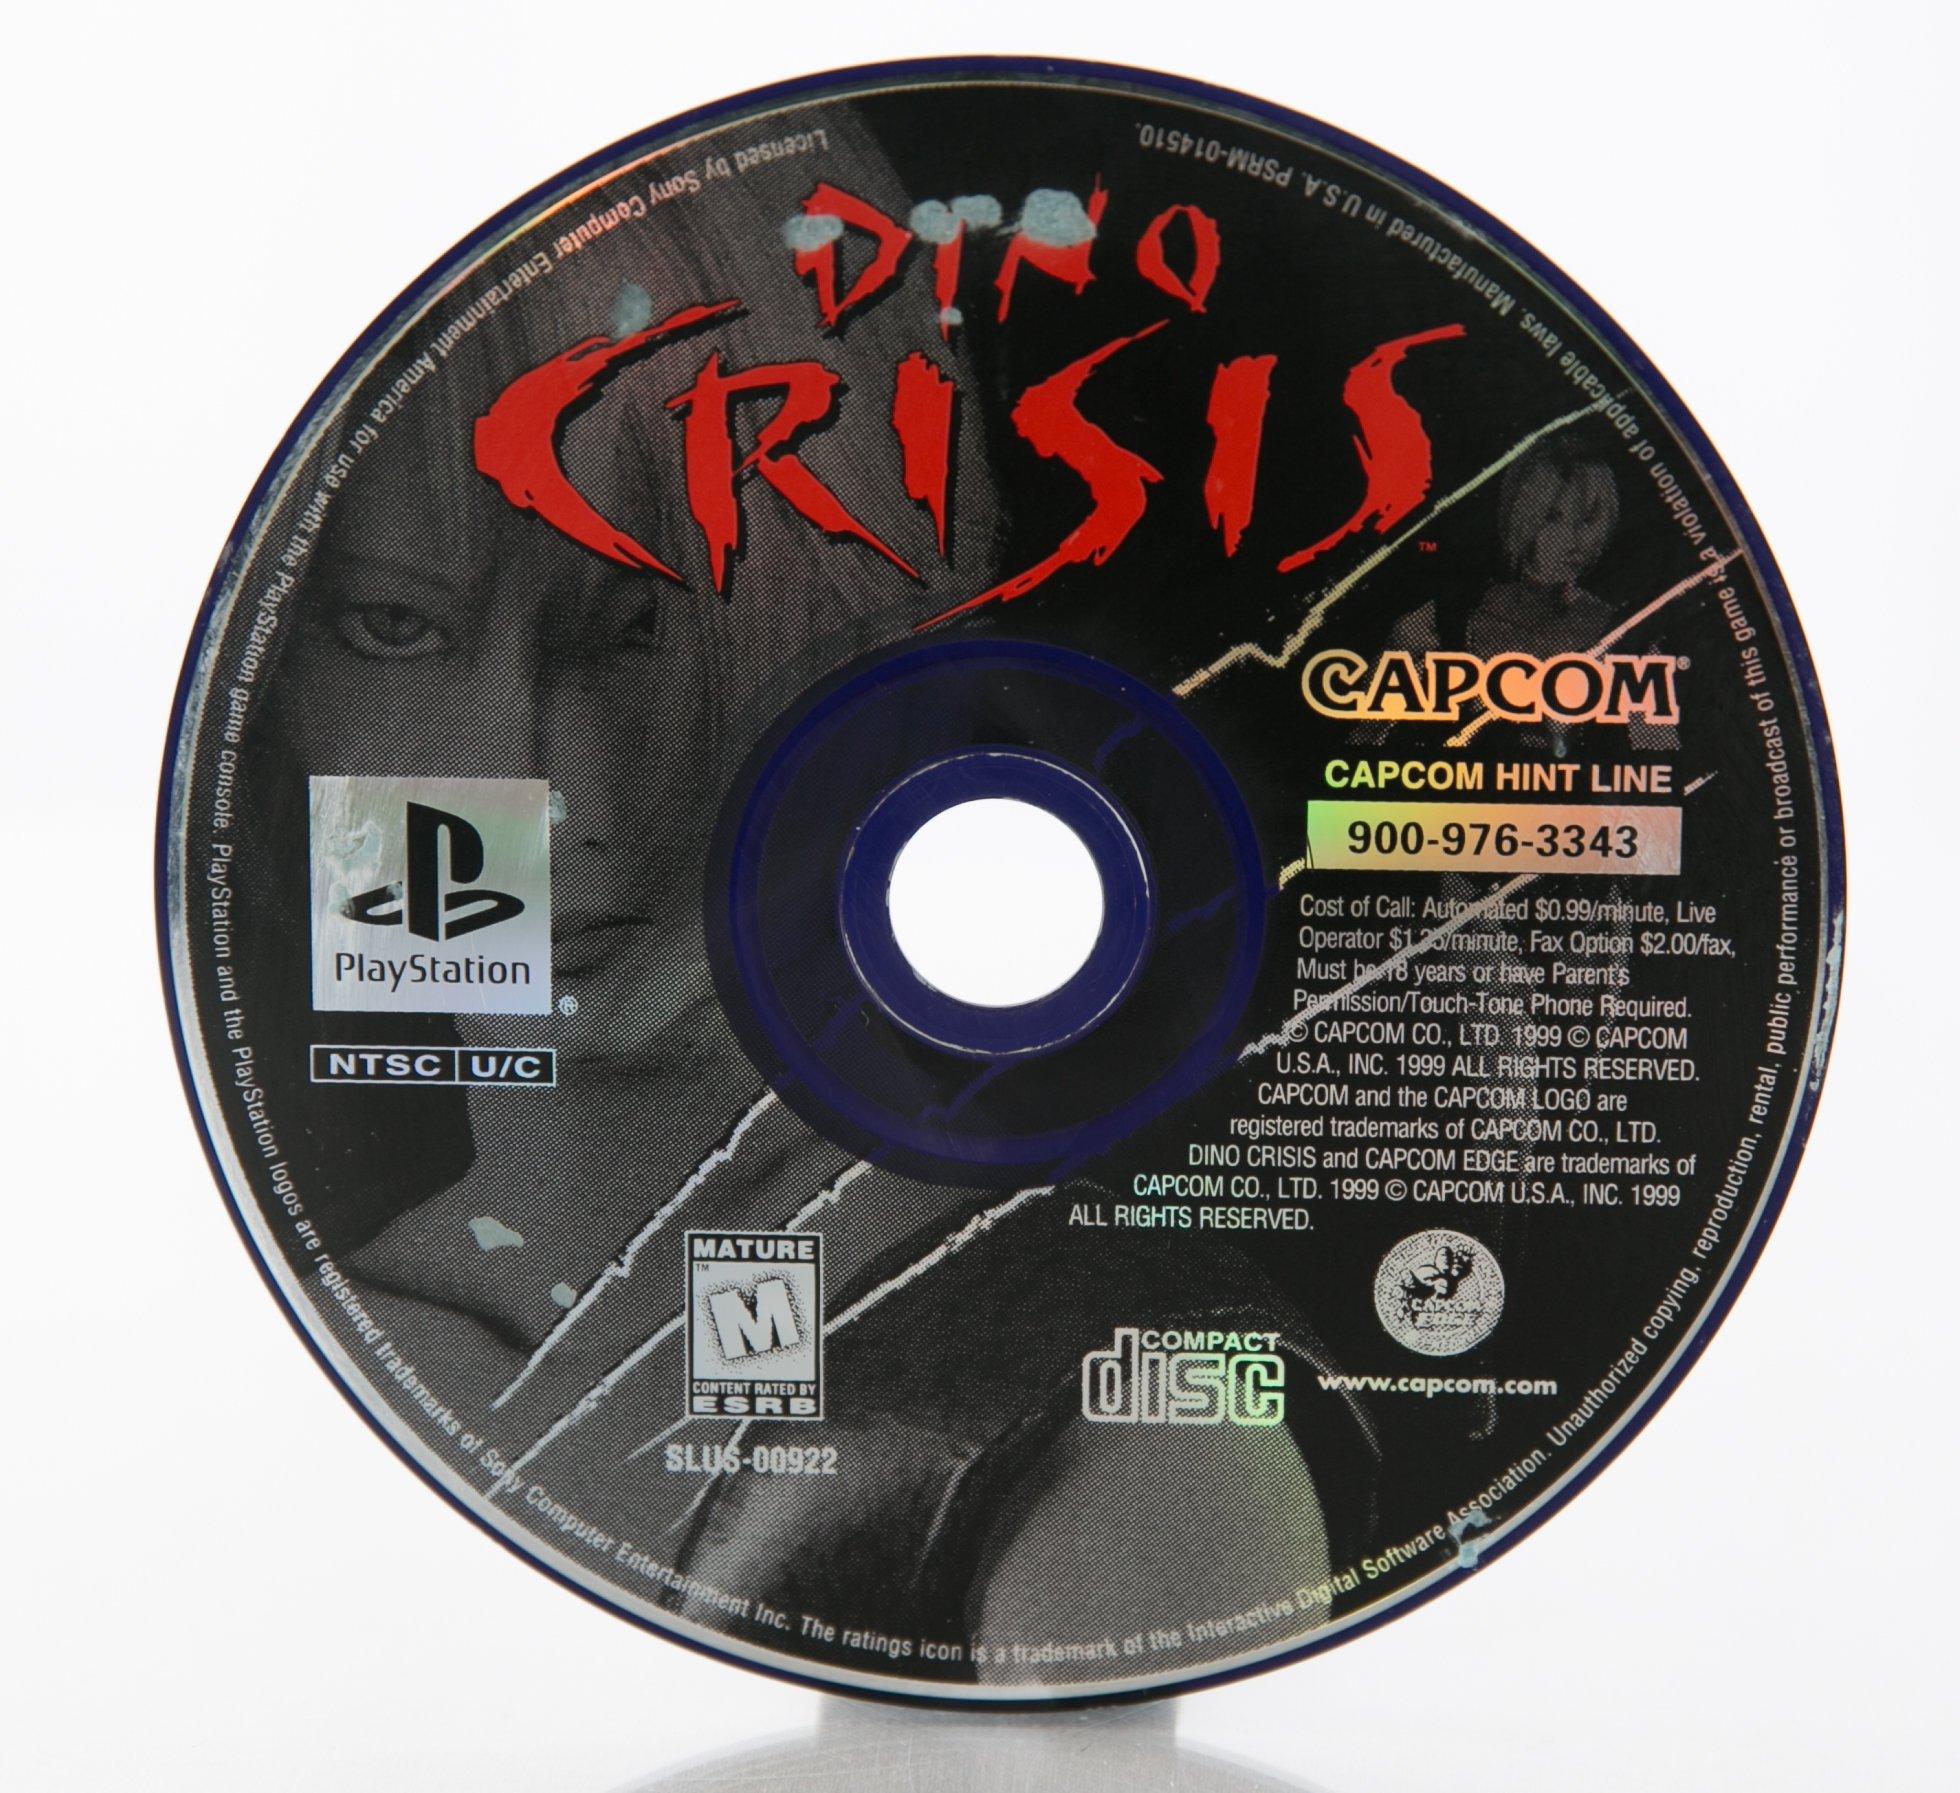 Dino Crisis [REPLICA] - PS1 ONE - Sebo dos Games - 10 anos!